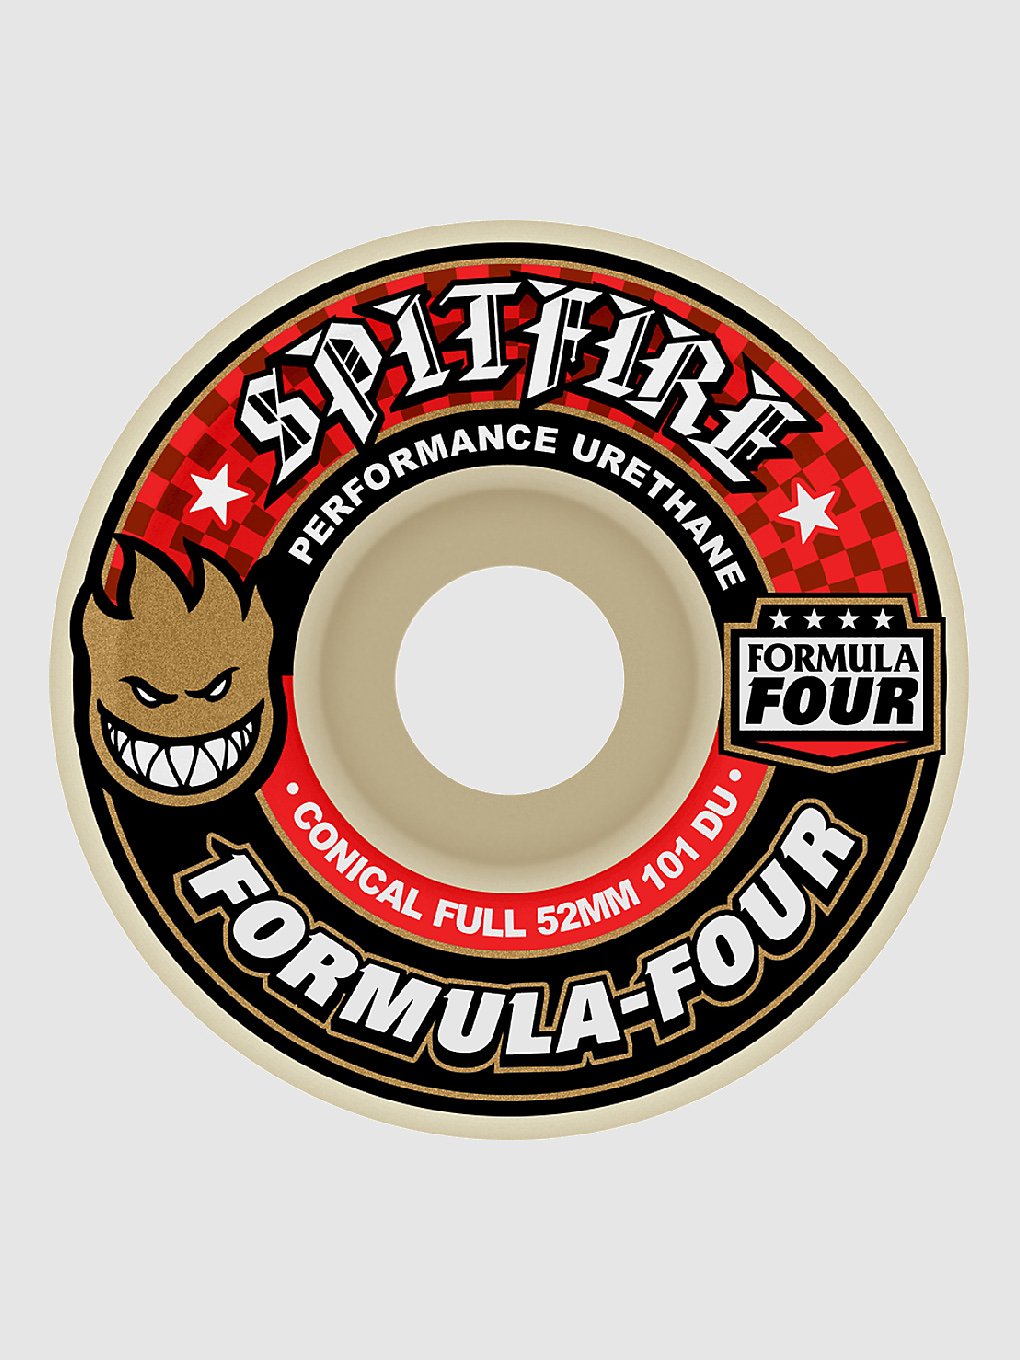 Spitfire Formula 4 101D Conical Full 53mm Wielen wit